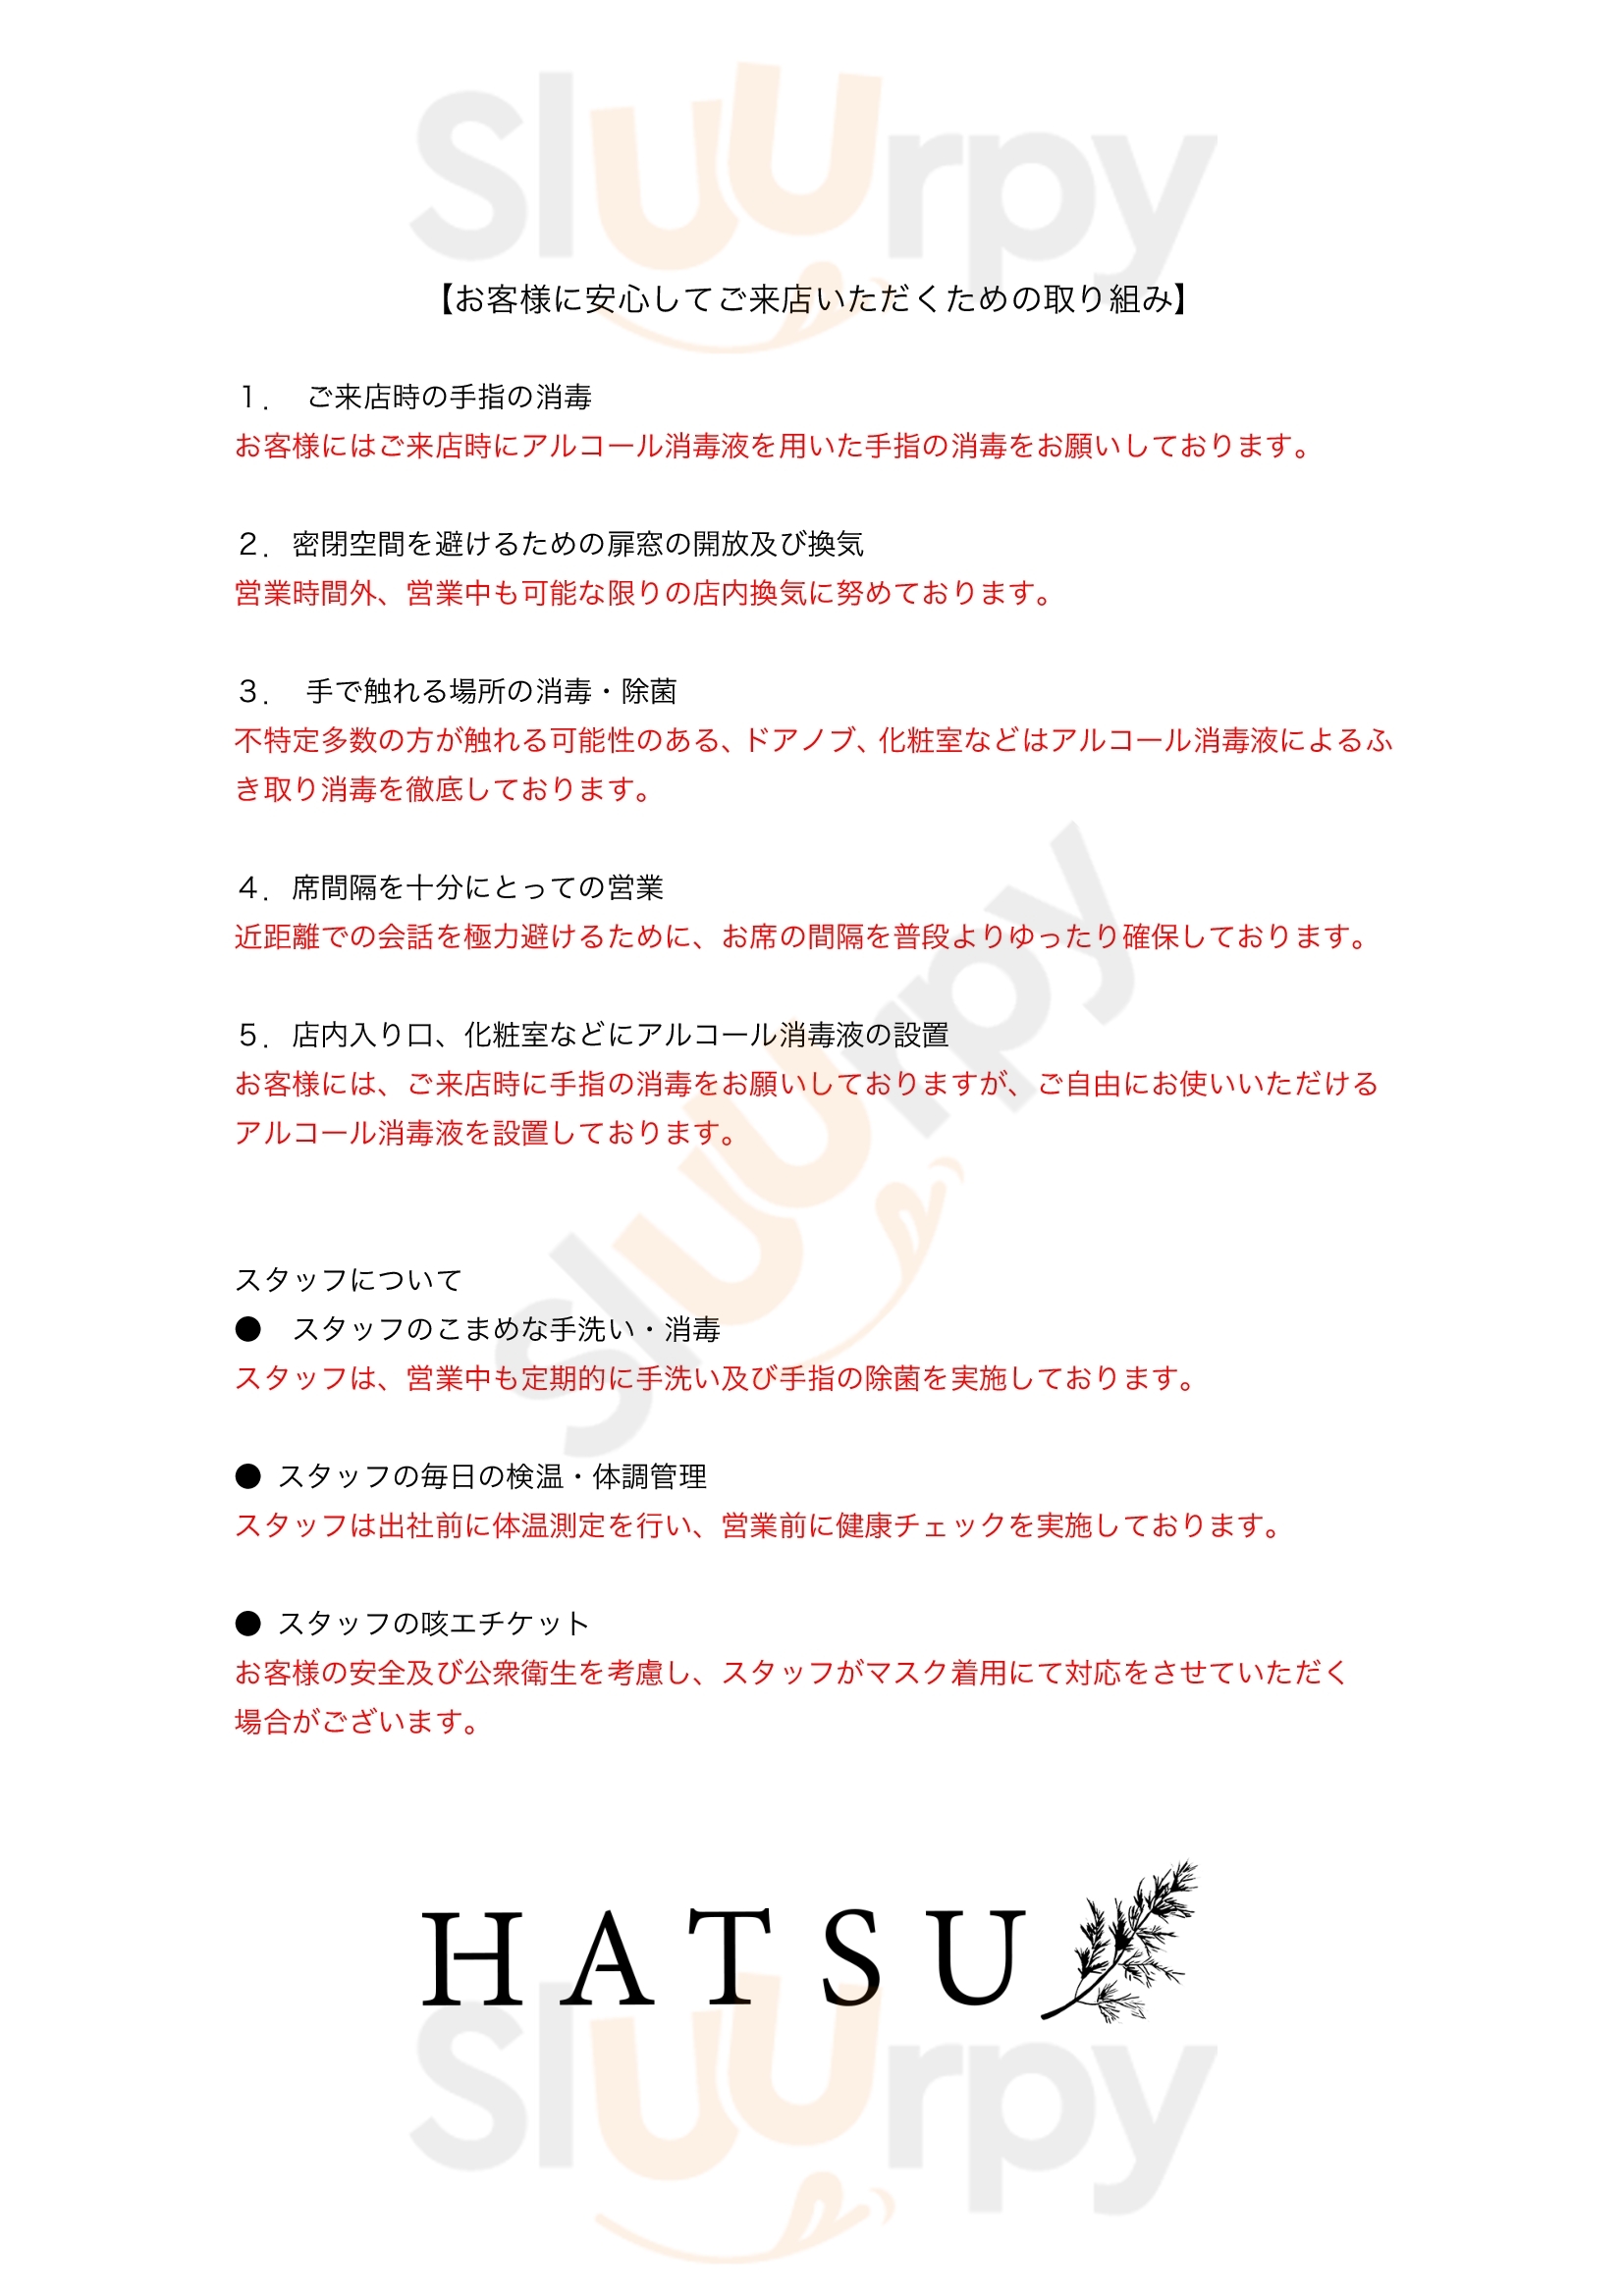 Hatsu 北区 Menu - 1